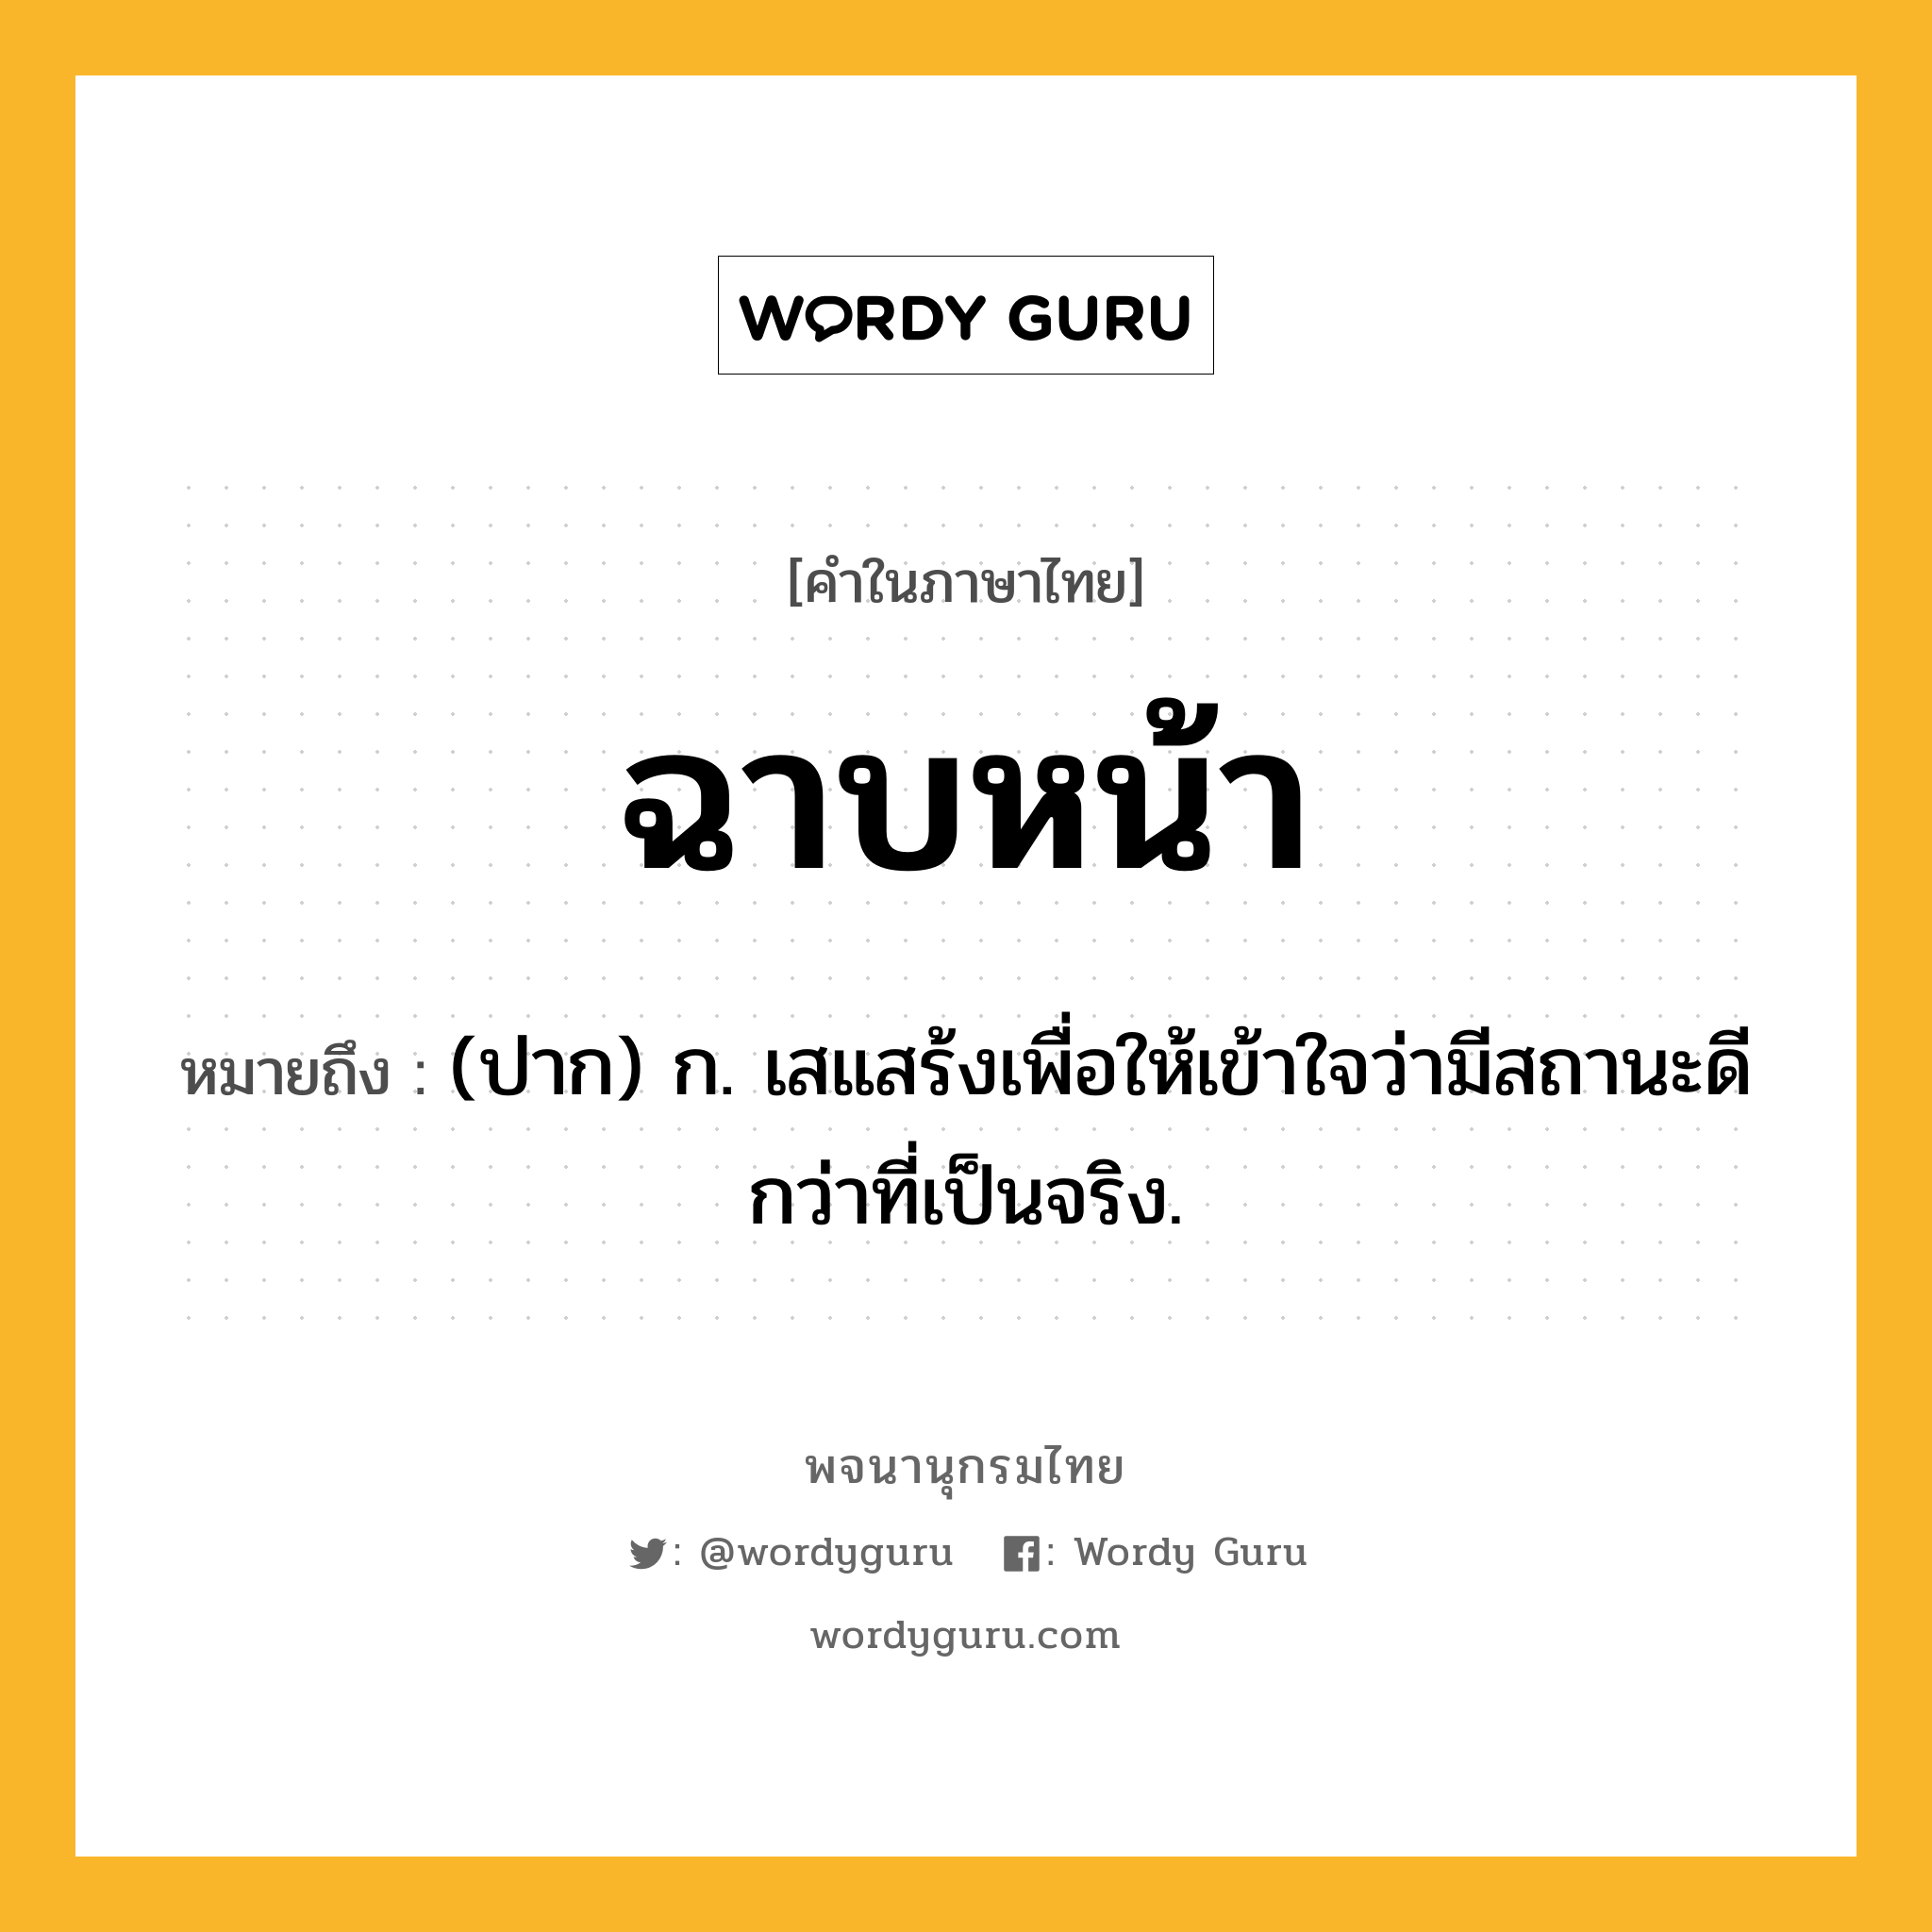 ฉาบหน้า หมายถึงอะไร?, คำในภาษาไทย ฉาบหน้า หมายถึง (ปาก) ก. เสแสร้งเพื่อให้เข้าใจว่ามีสถานะดีกว่าที่เป็นจริง.